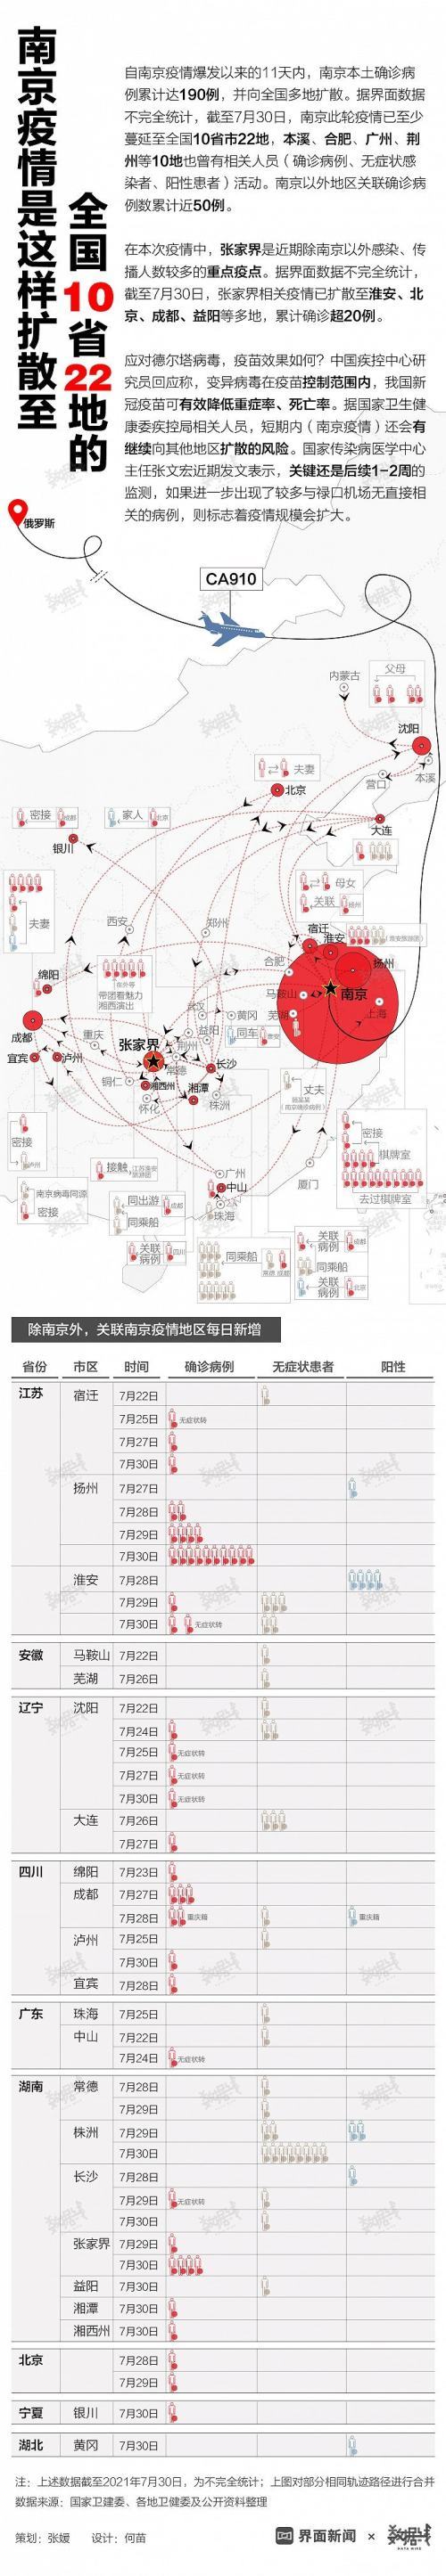 一图看懂|南京疫情是这样扩散至全国10省22地的